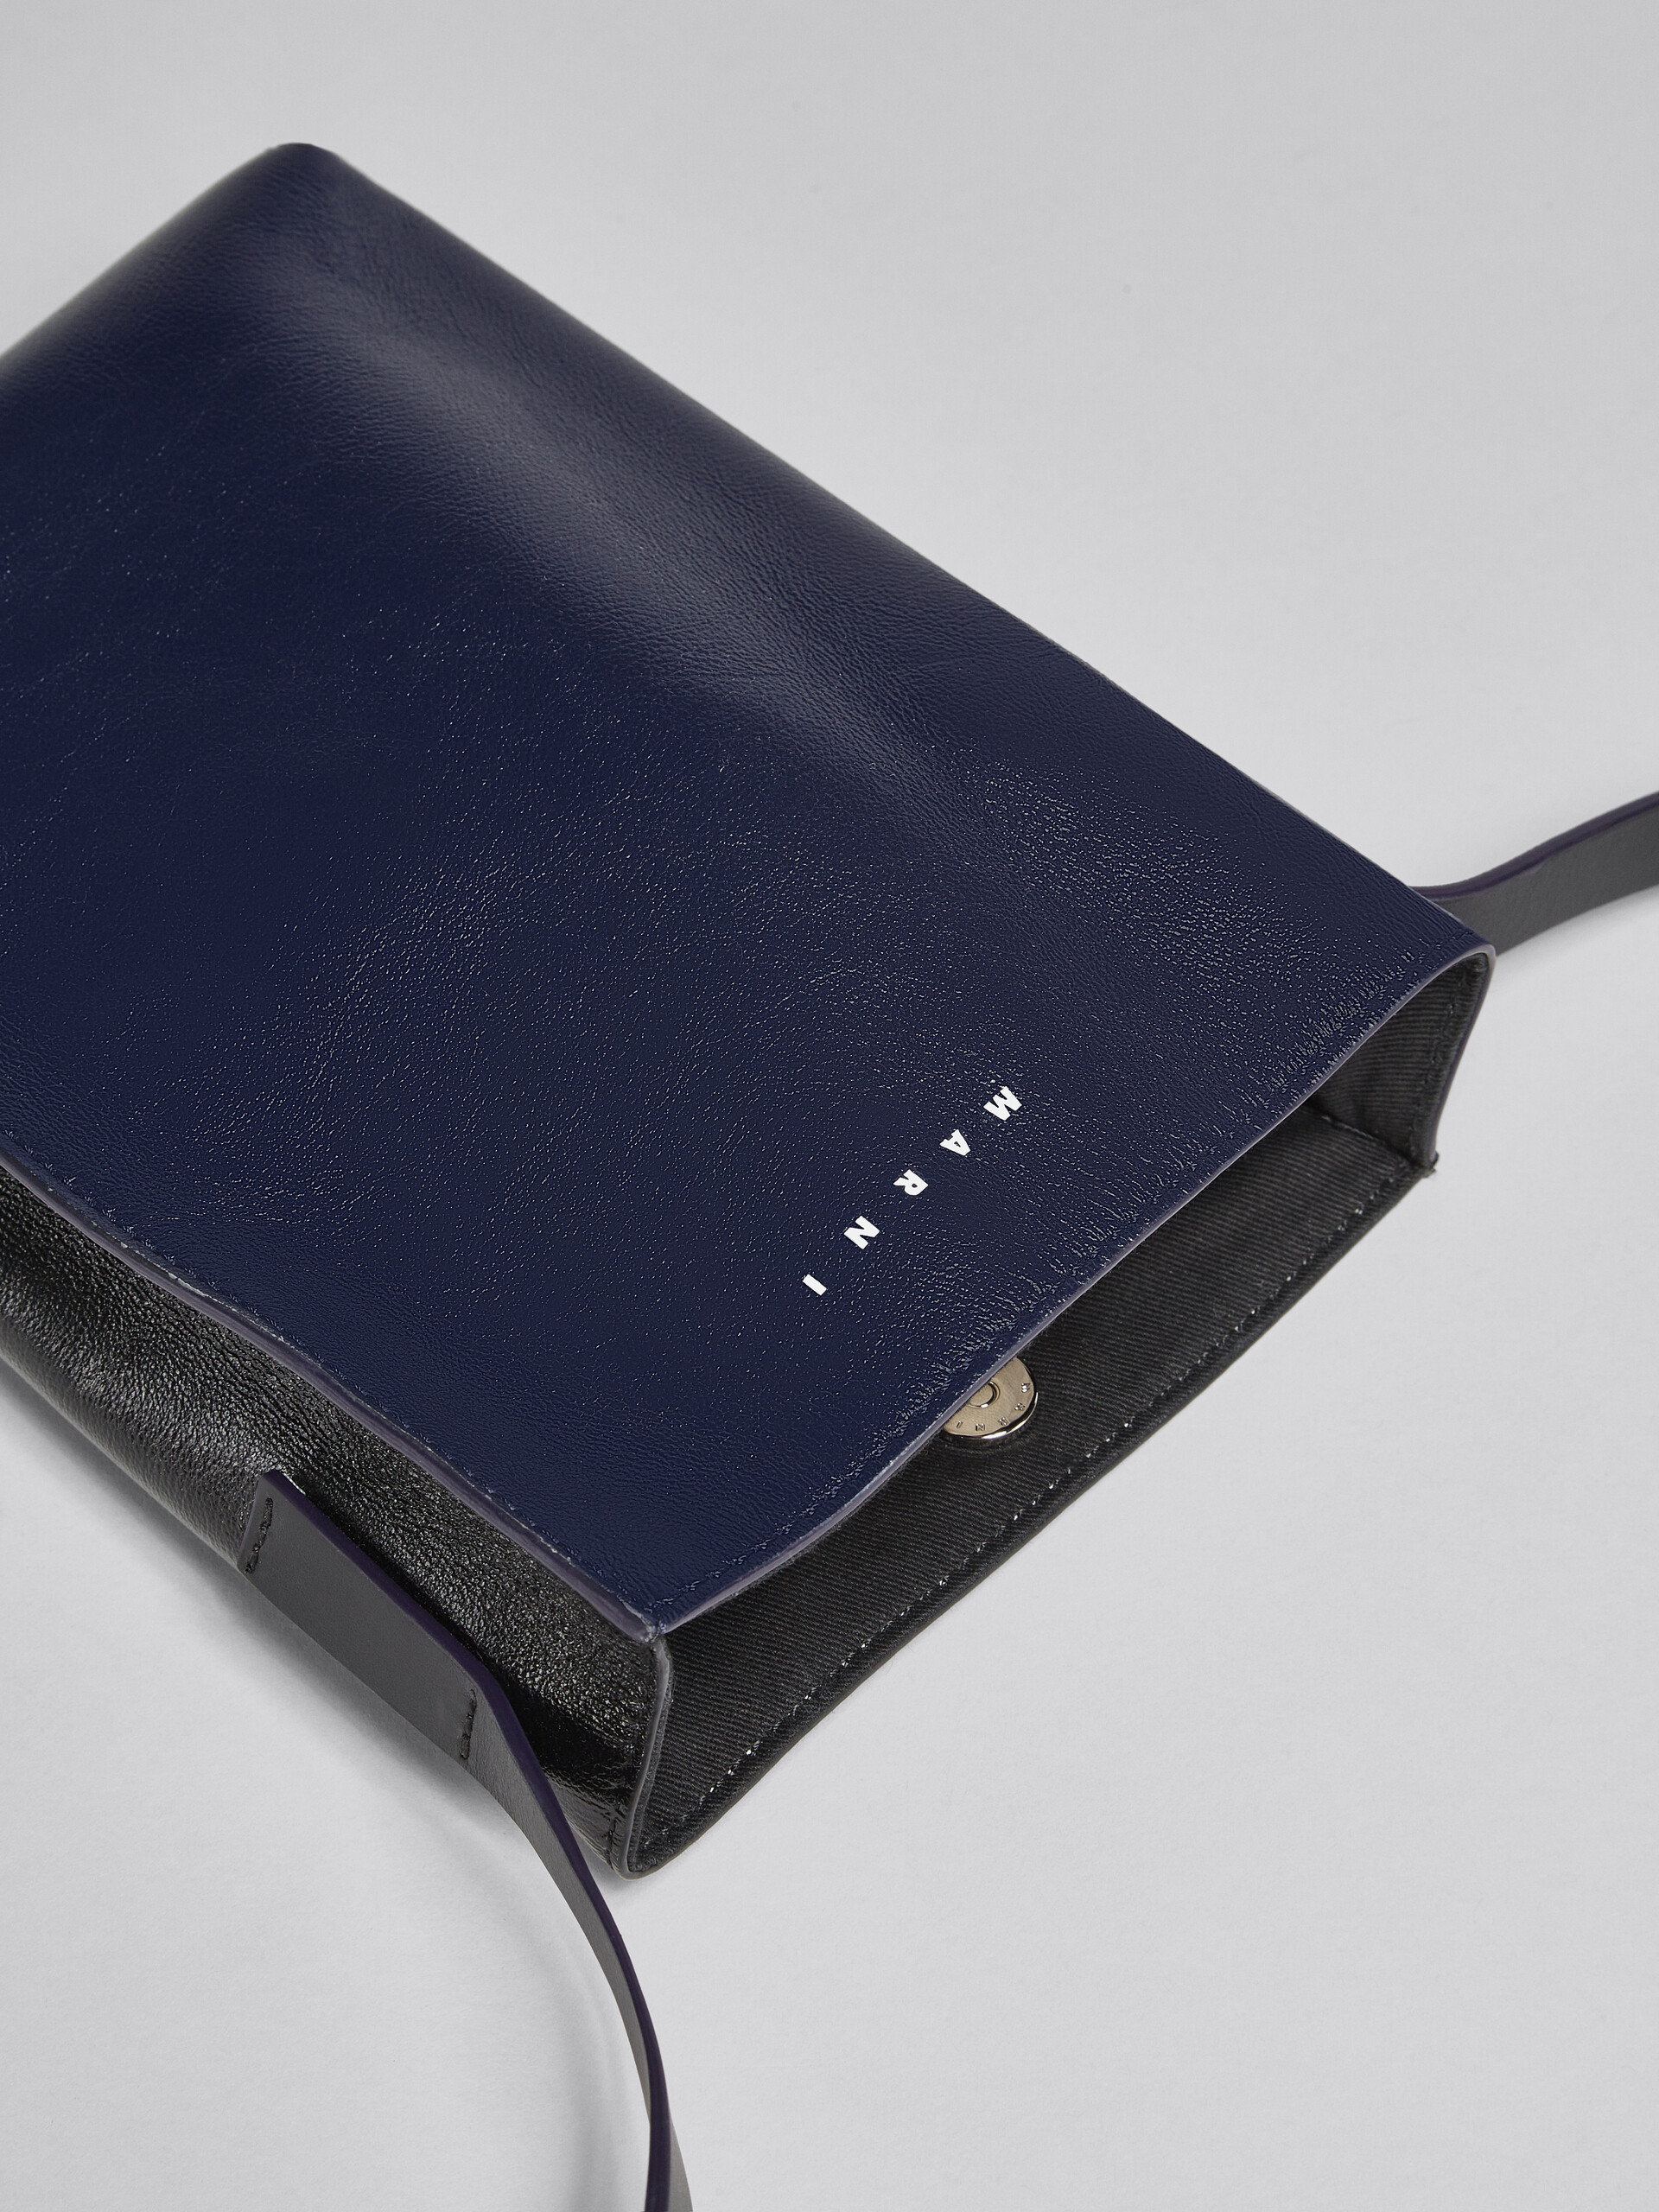 MUSEO SOFT bag piccola in pelle lucida blu e nera - Borse a spalla - Image 5